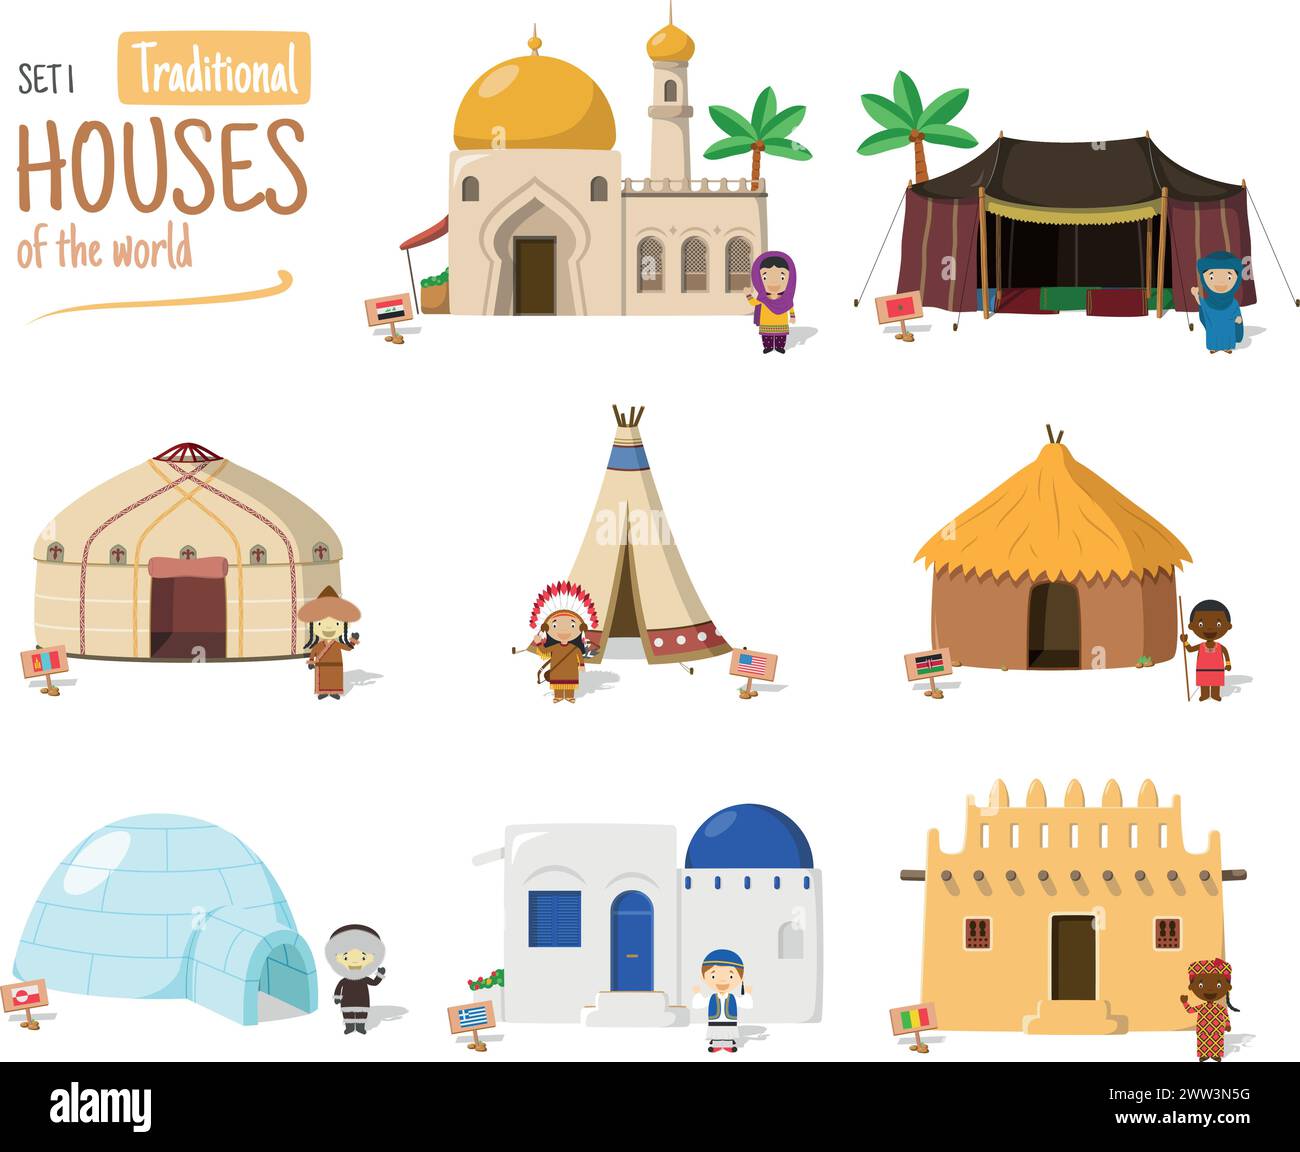 Vektor-Illustration Set 1 von traditionellen Häusern der Welt im Zeichentrickstil isoliert auf weißem Hintergrund Stock Vektor